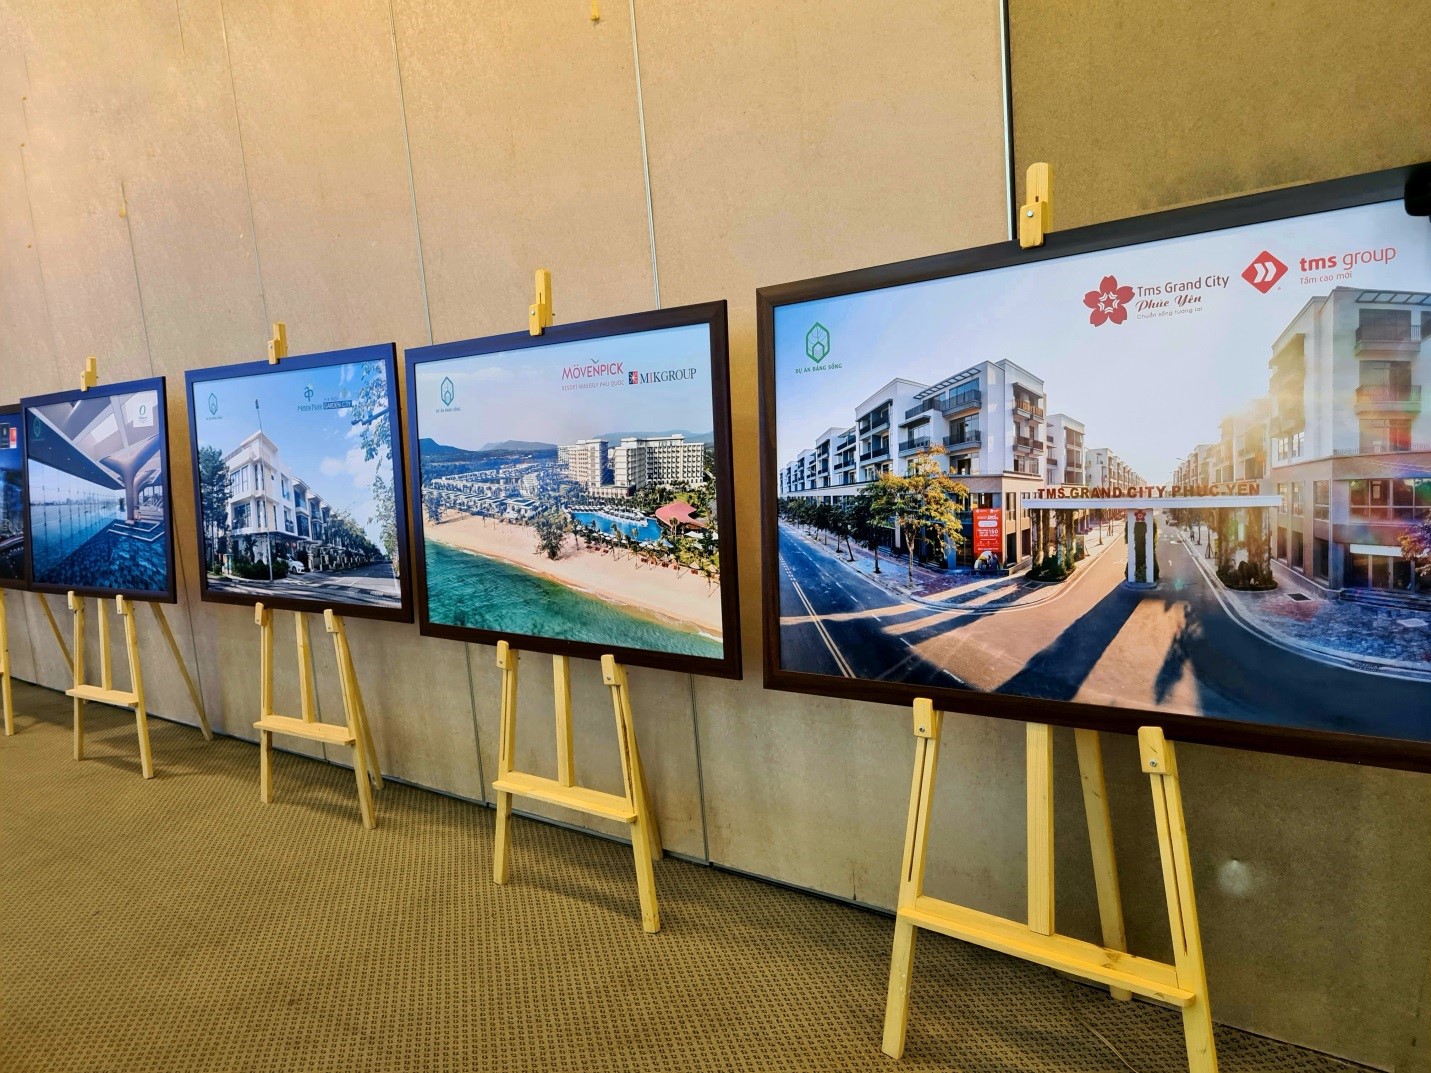 TMS Grand City Phúc Yên – Dự án đáng sống năm 2020